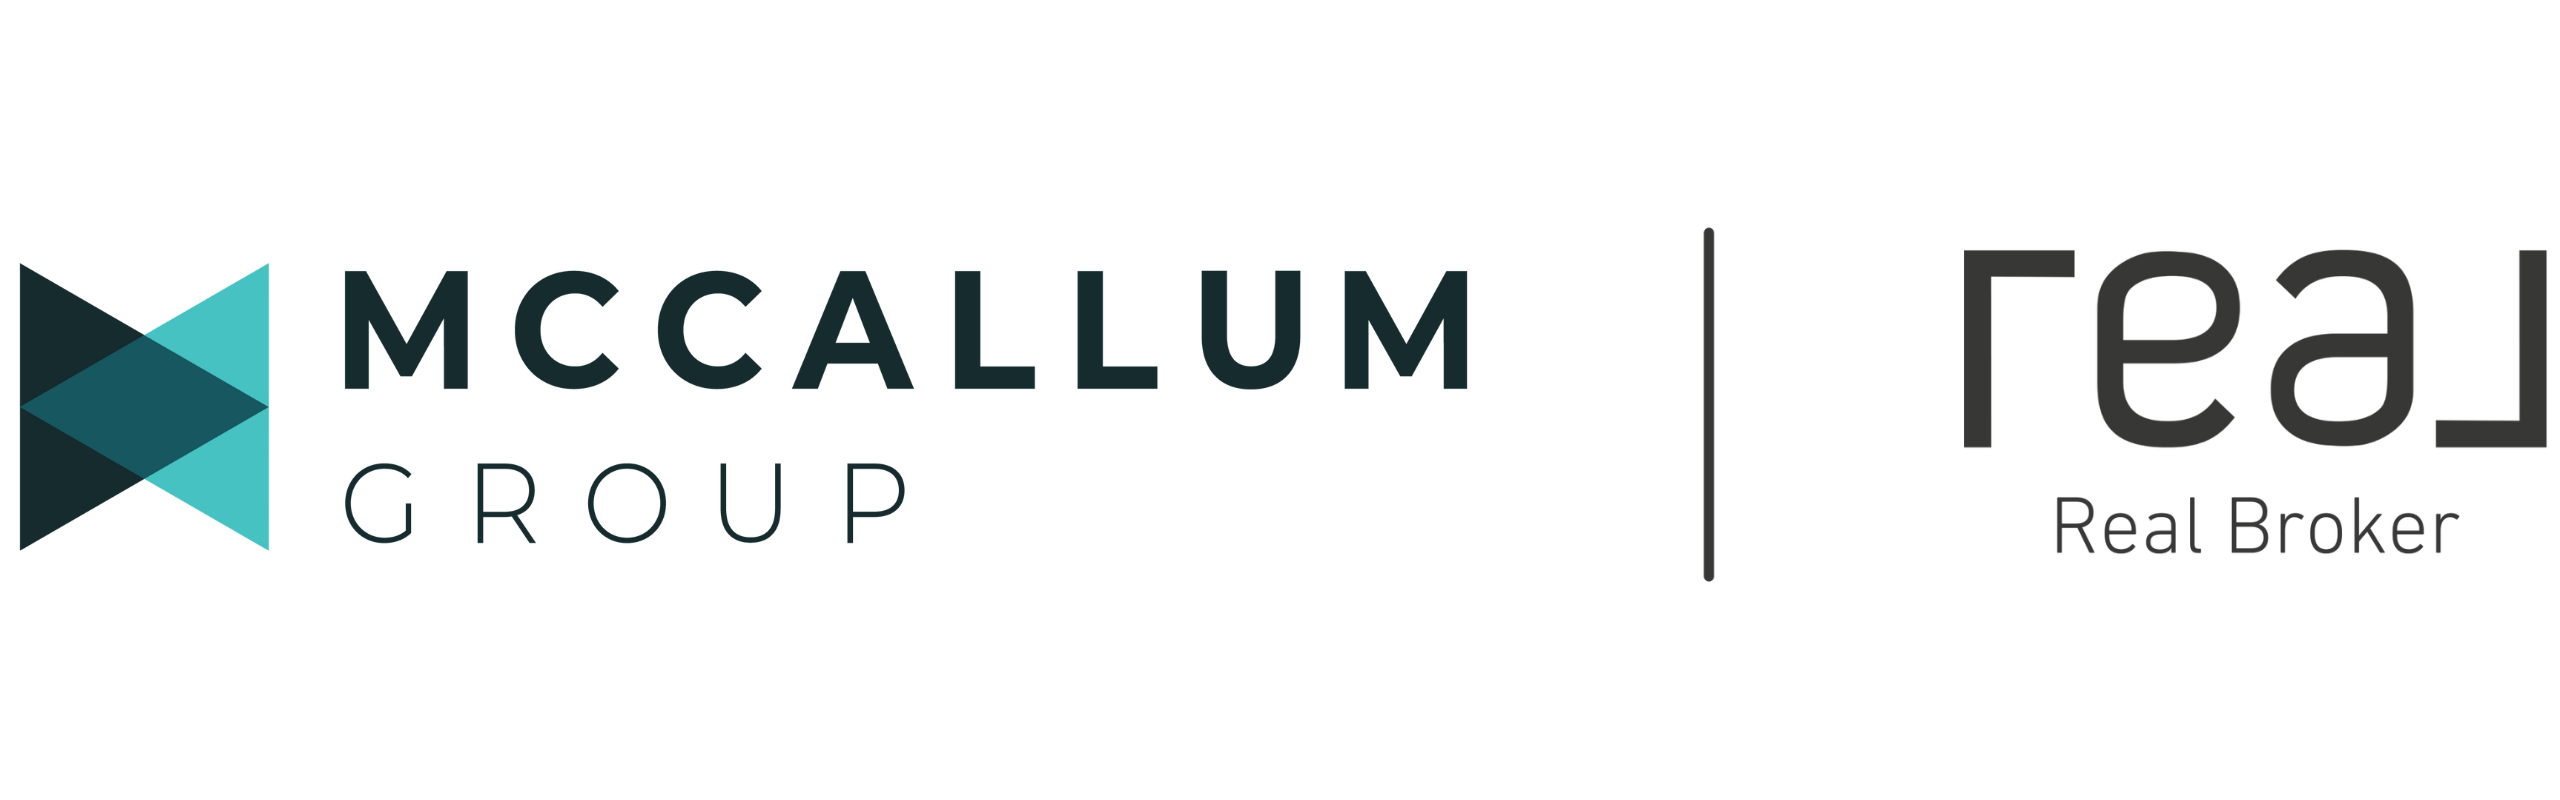  McCallum Group